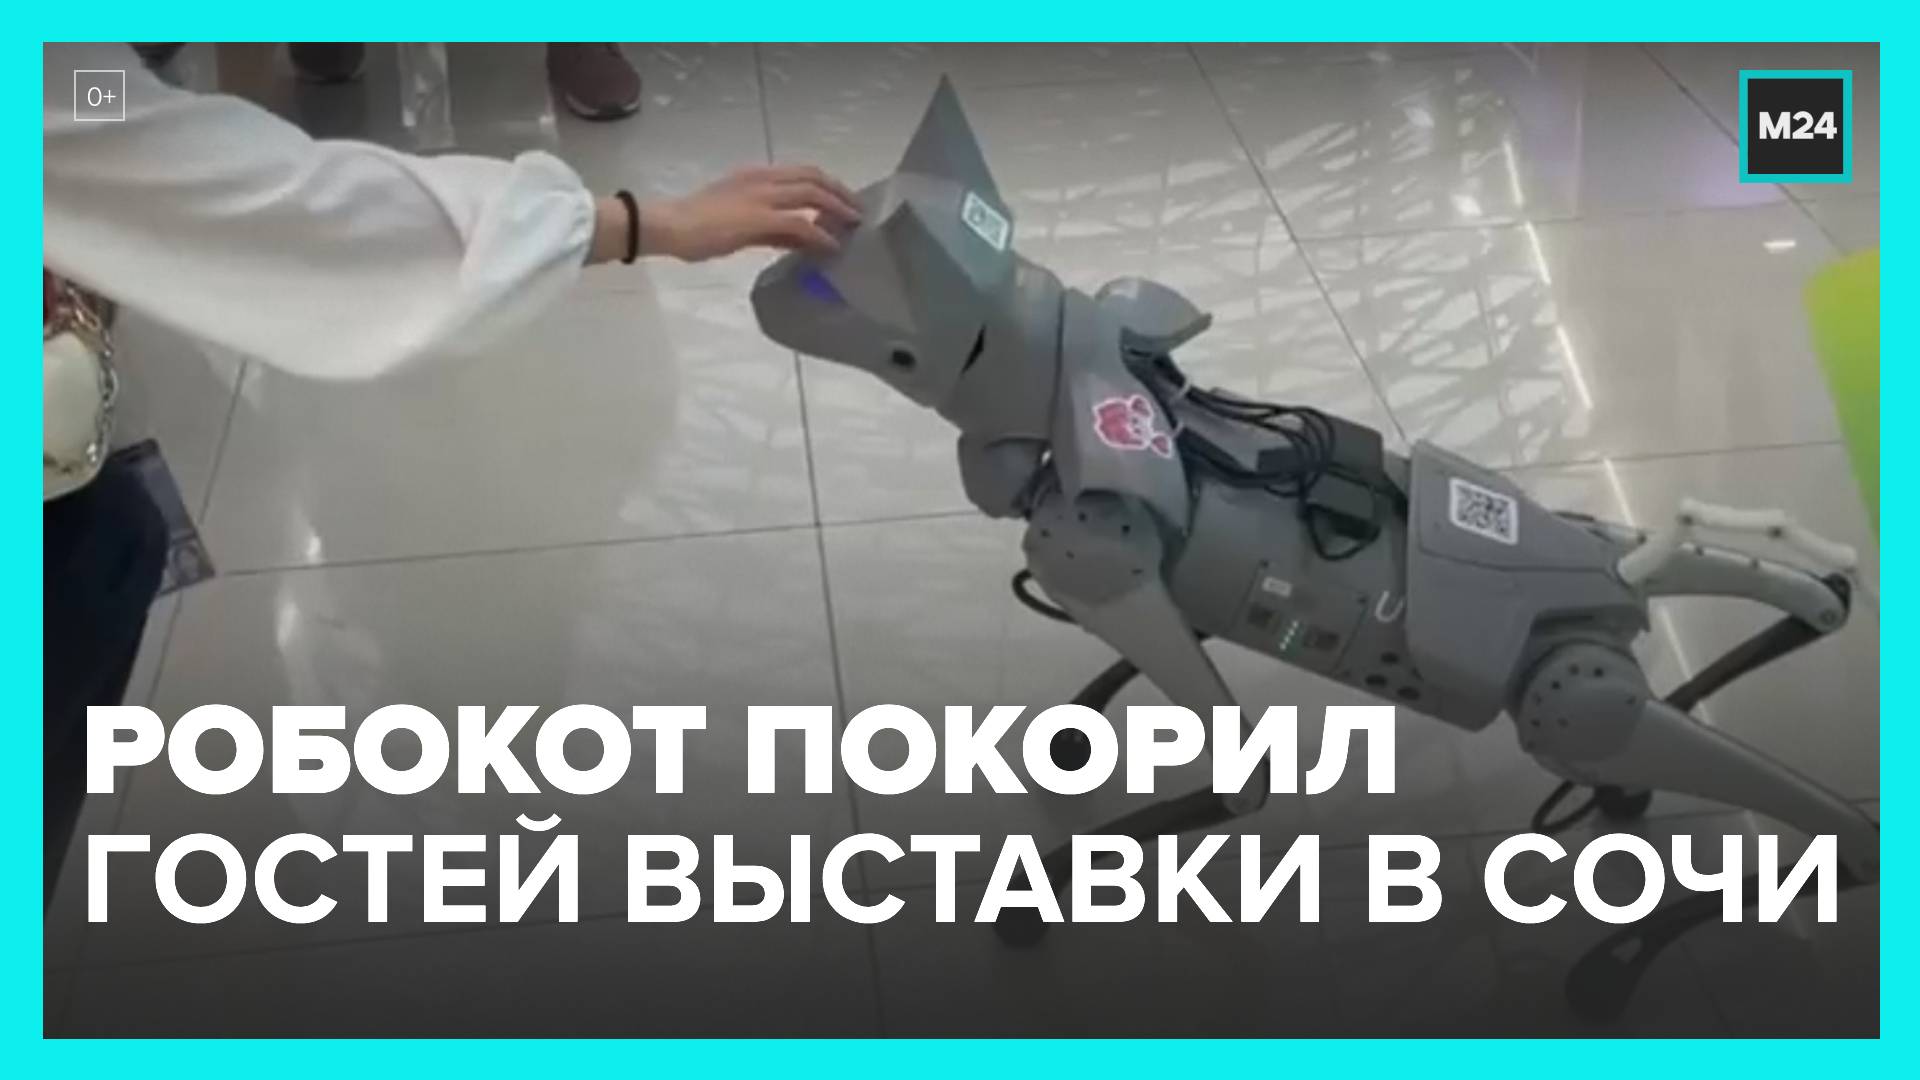 Робокот покорил гостей научной выставки в Сочи - Москва 24